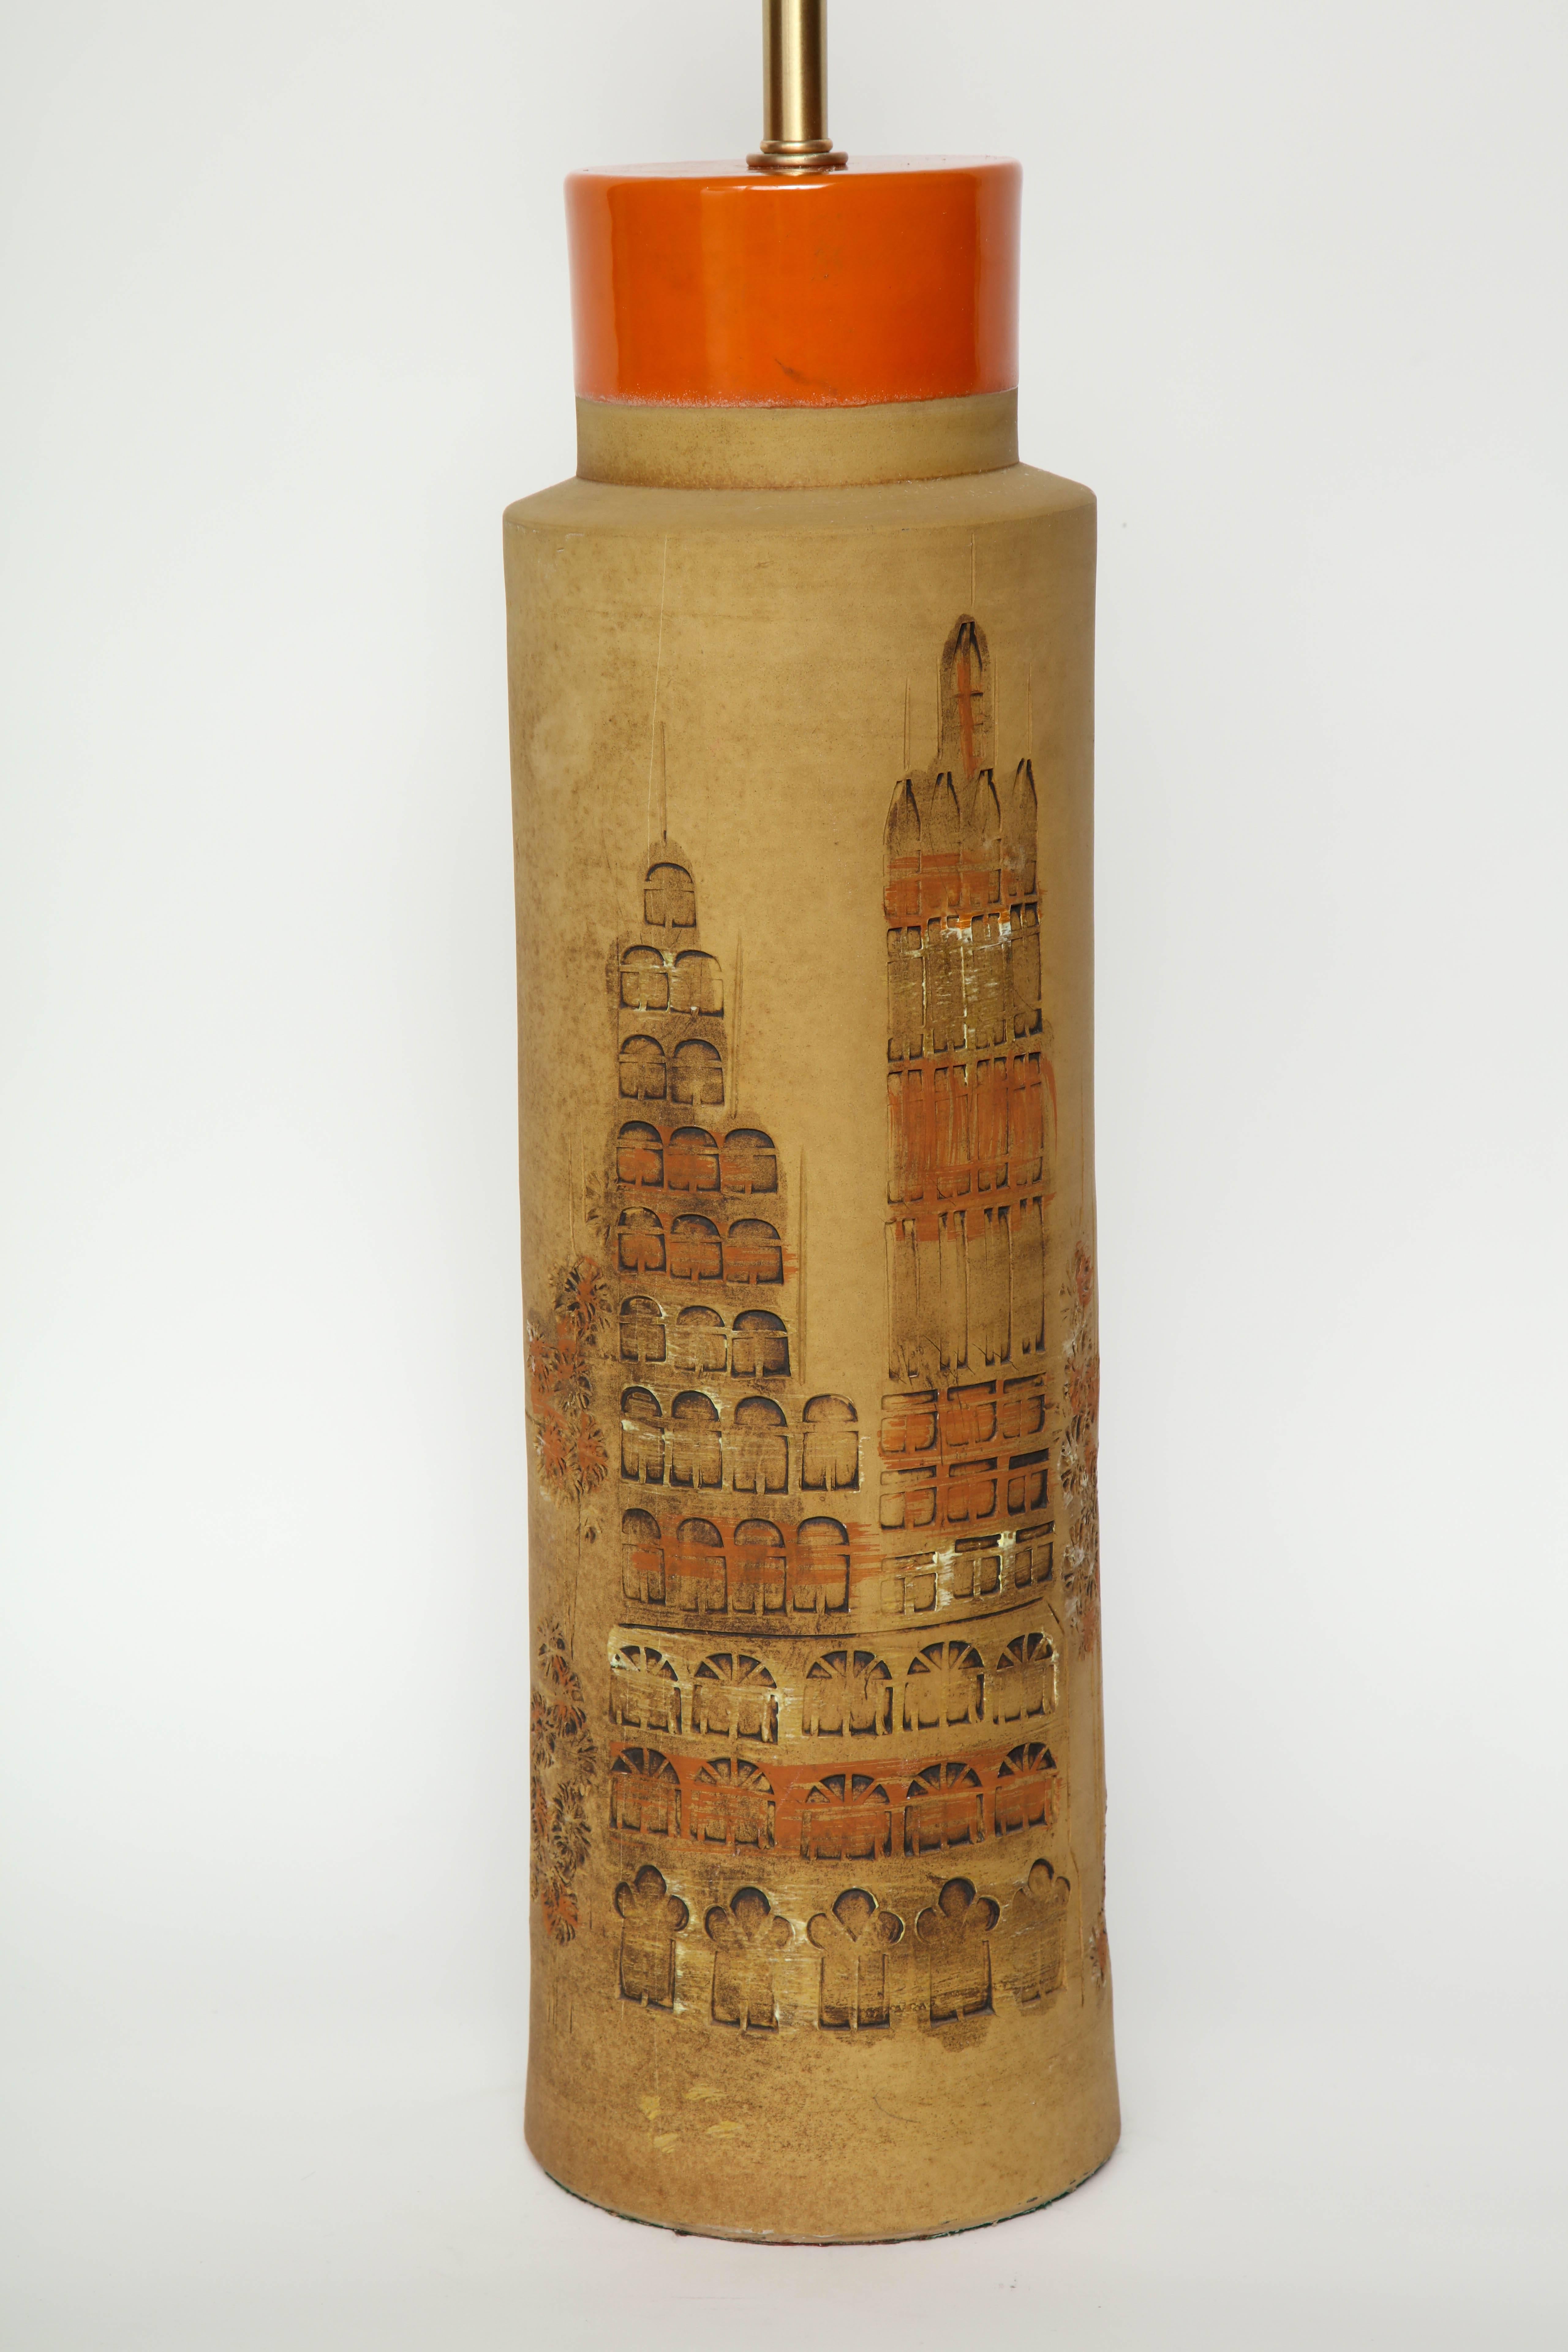 Paire de lampes cylindriques italiennes classiques du milieu du siècle dernier, avec des détails appliqués à la main en stampato représentant des bâtiments constituant la ligne d'horizon d'une ville, le tout couronné d'un vernis orange. Recâblé pour